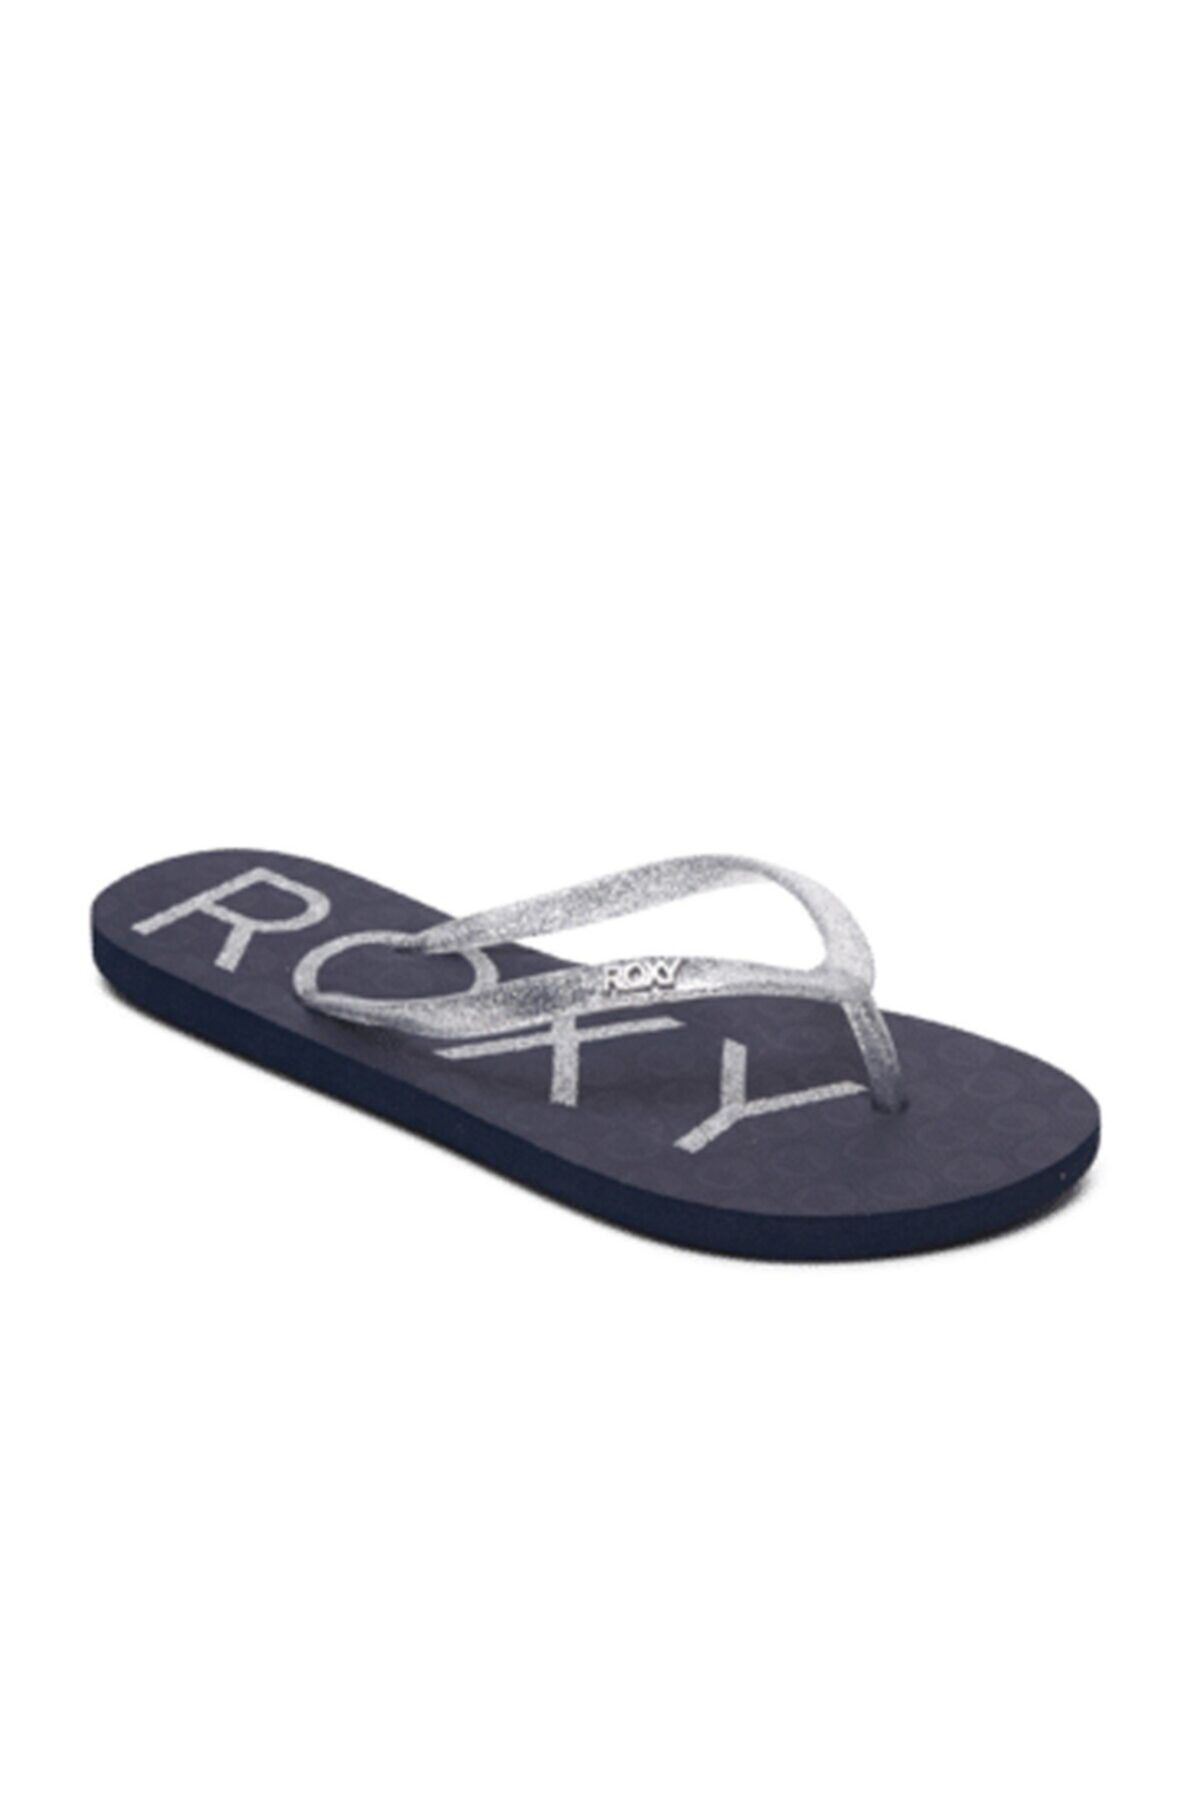 Roxy VIVA SPARKLE Lacivert Kadın Sandalet 101106903